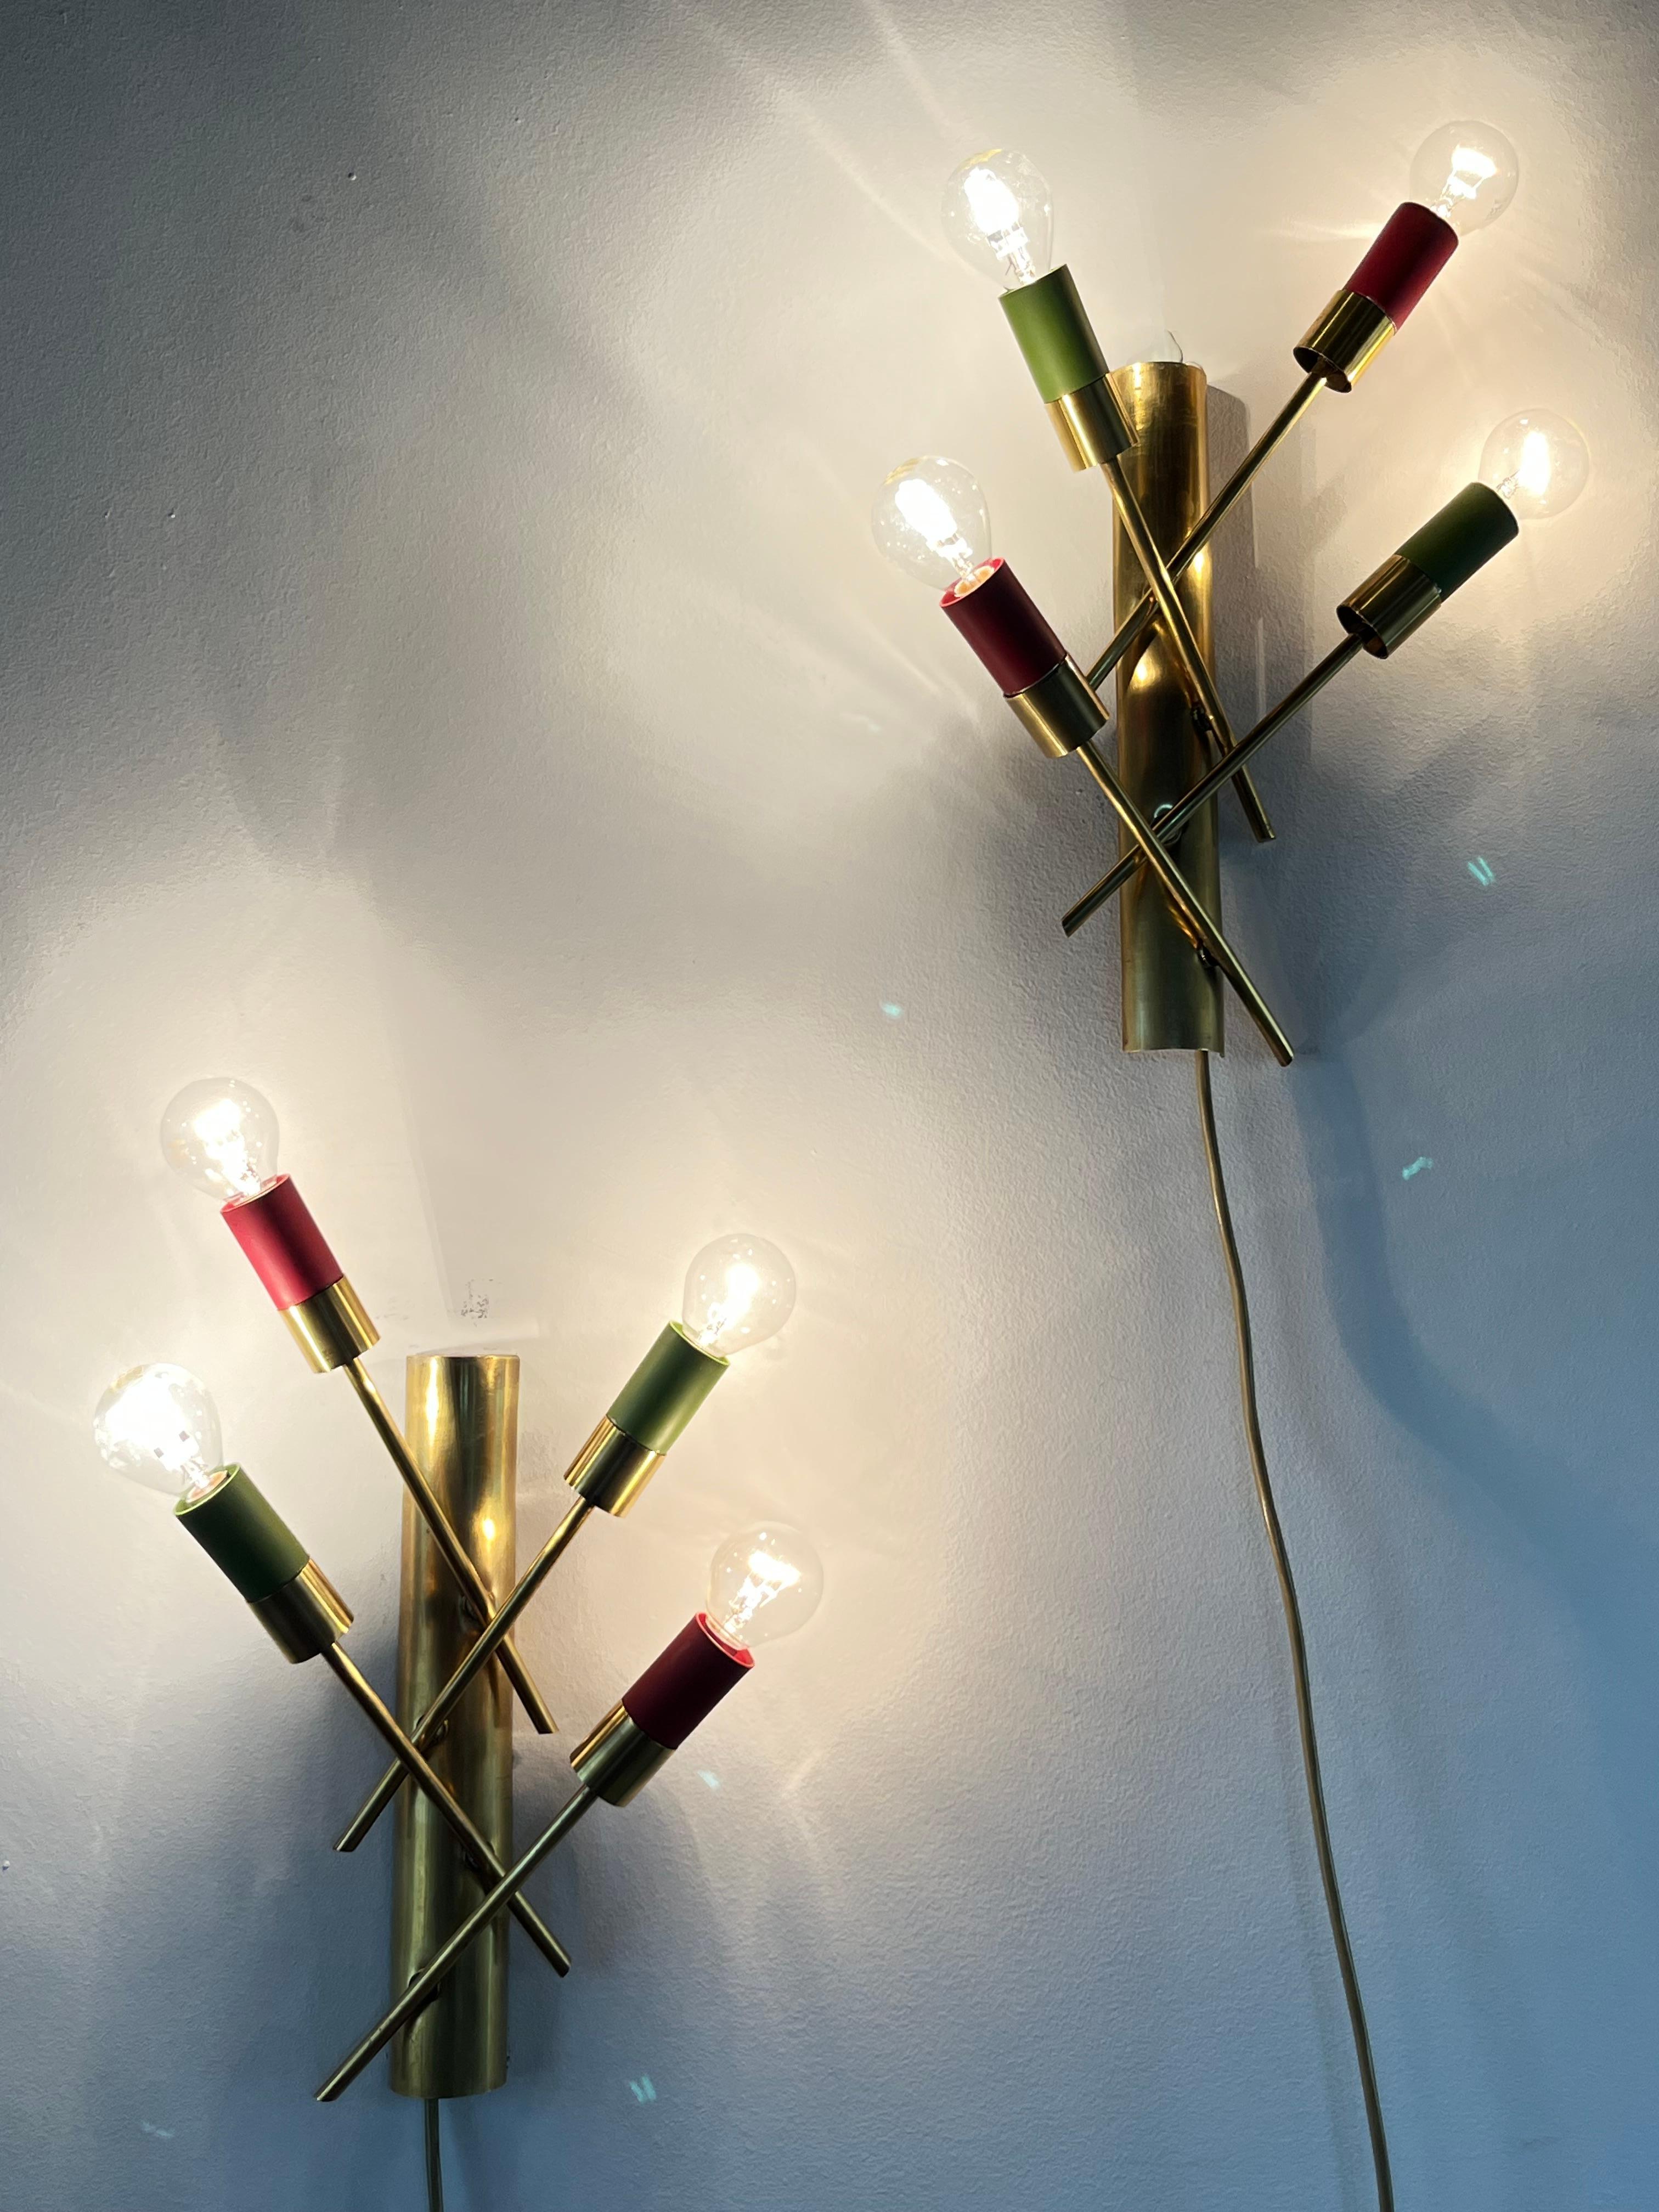 Seltenes Paar Wandlampen aus Messing, 1950er Jahre mit 4 Lichtern, italienische Produktion. Konkave Sockel mit jeweils vier schrägen Stäben, die auf Wunsch verbreitert oder verengt werden können.
Die Lampenfassungen sind aus Aluminium, 4 grün